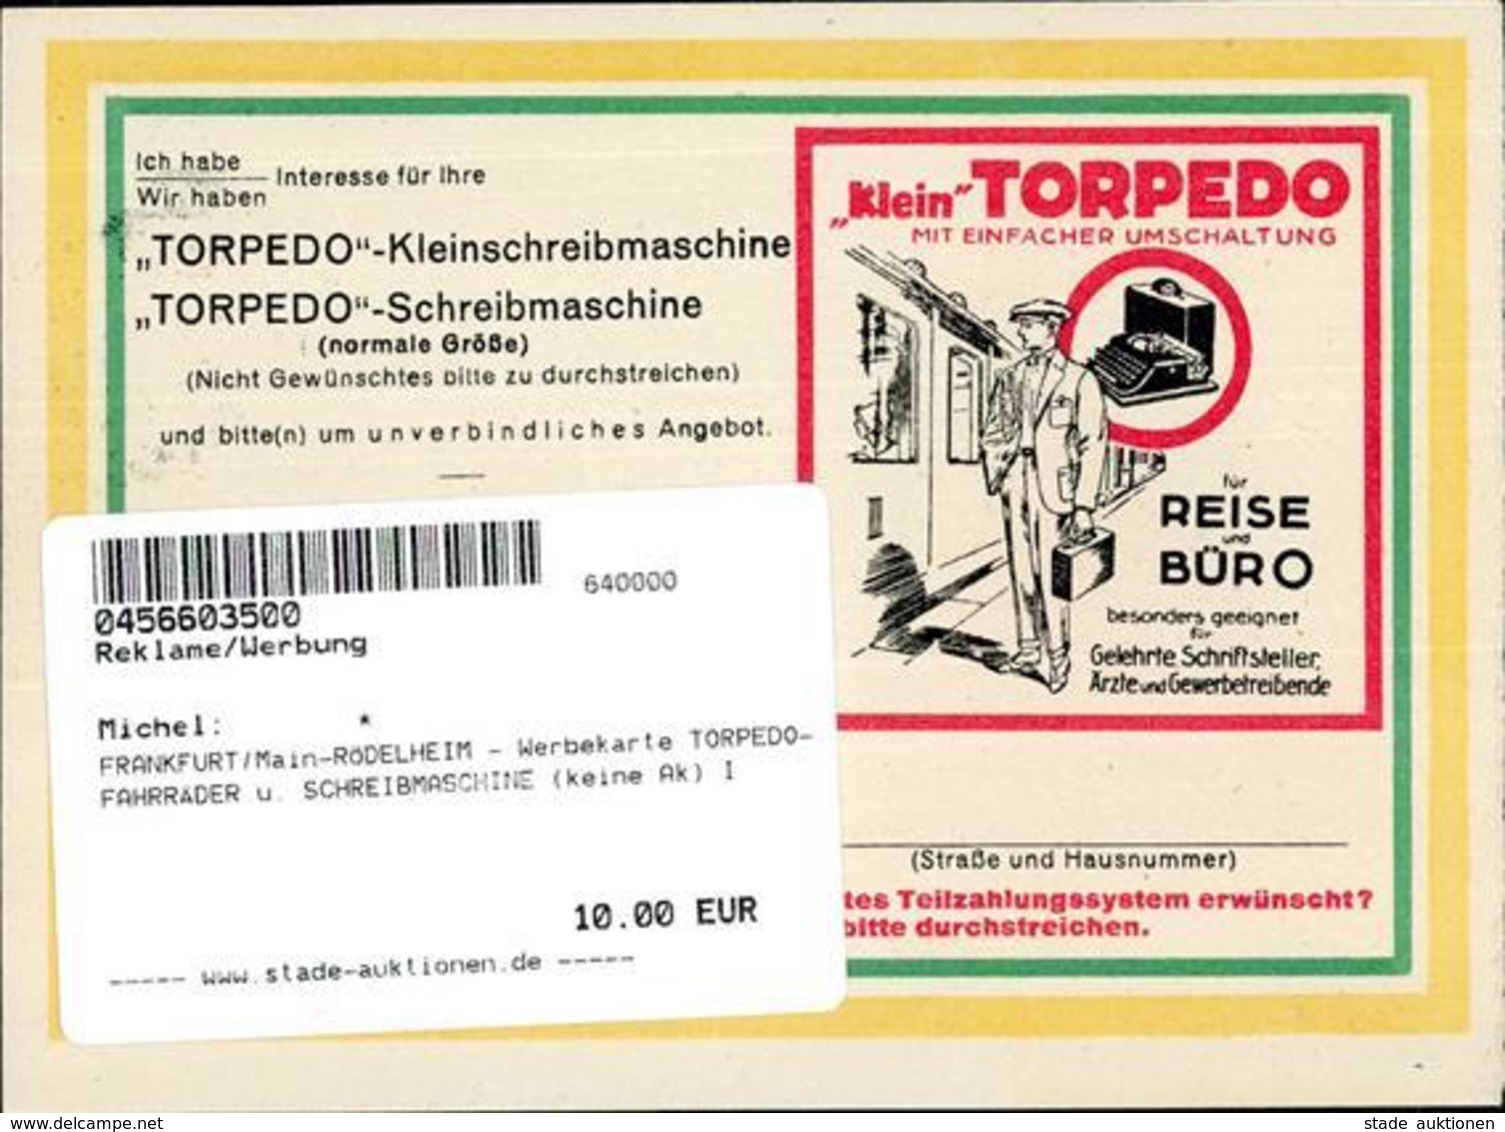 FRANKFURT/Main-RÖDELHEIM - Werbekarte TORPEDO-FAHRRÄDER U. SCHREIBMASCHINE (keine Ak) I - Publicité